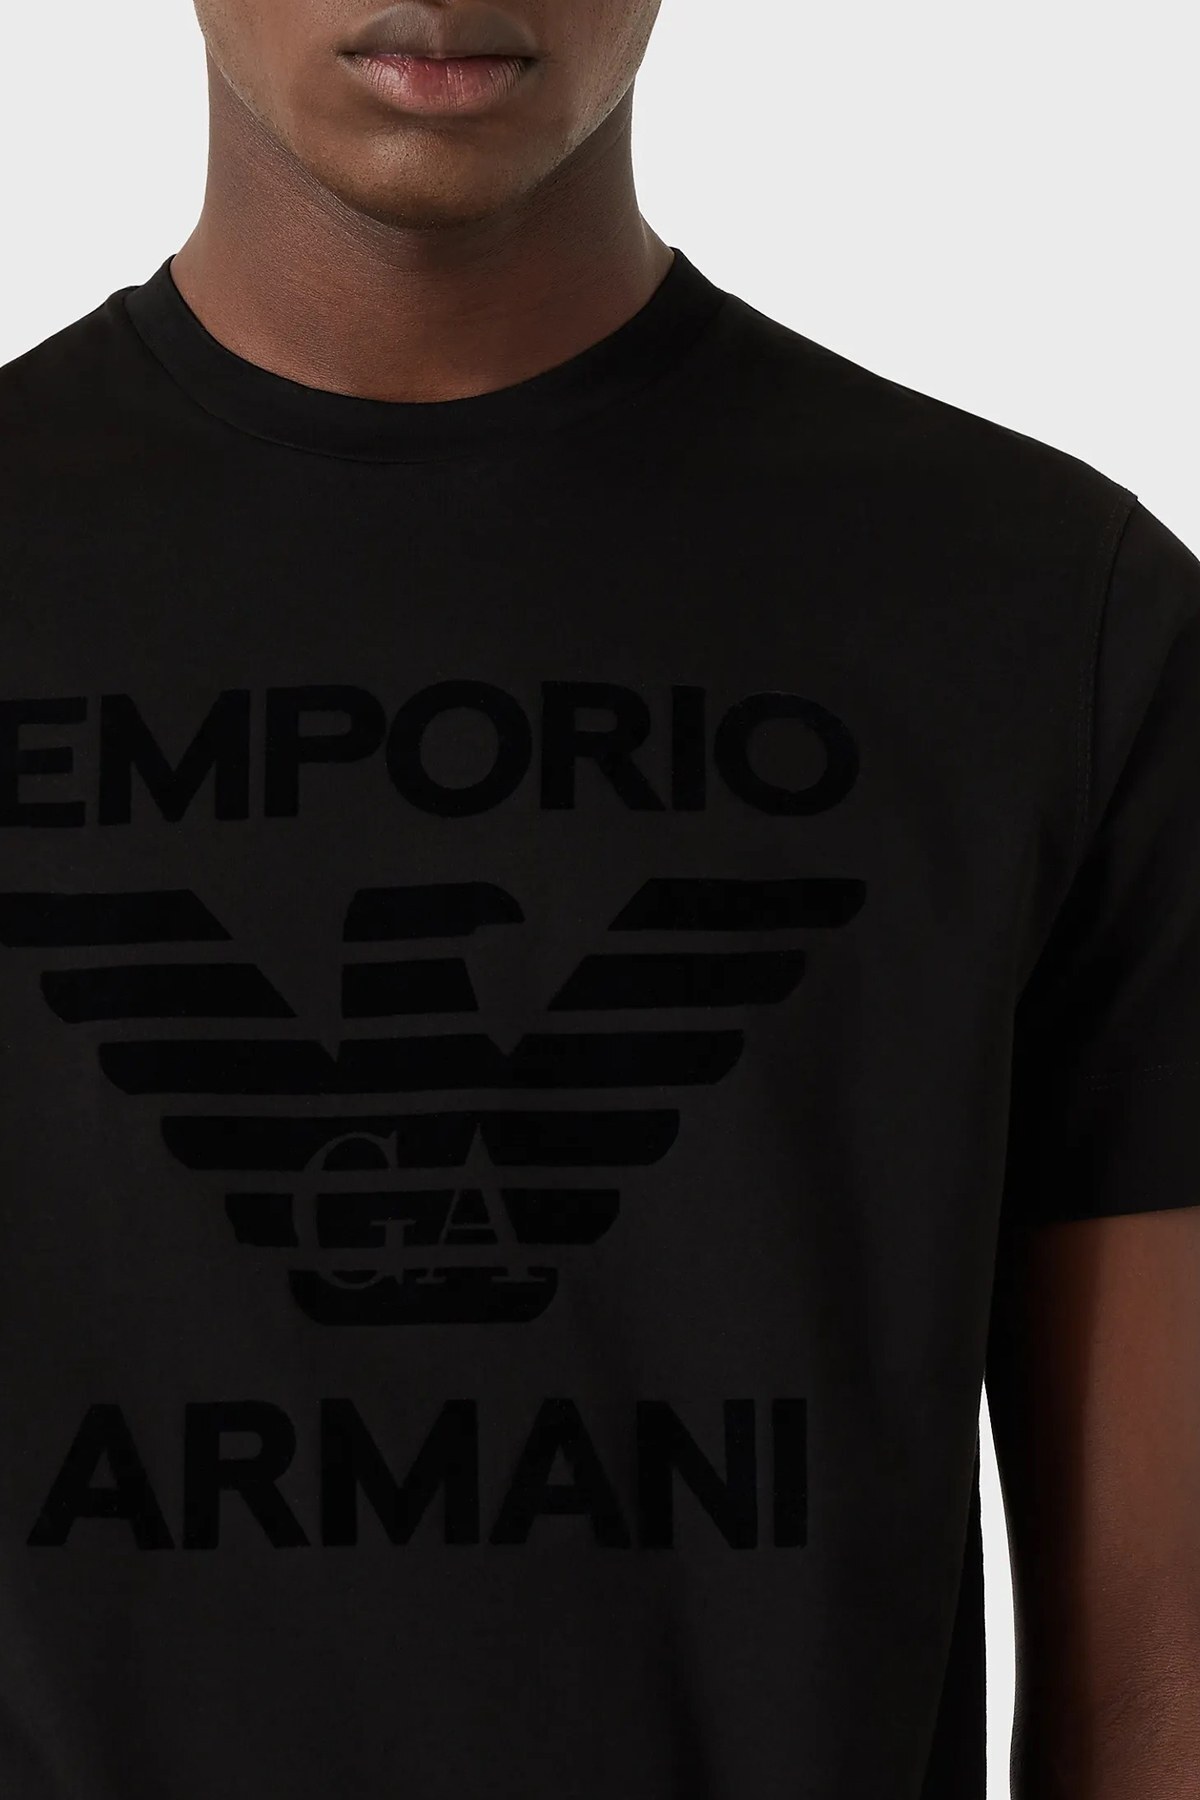 Emporio Armani Baskılı Bisiklet Yaka % 100 Pamuk Erkek T Shirt 6K1TD0 1JSAZ 0999 SİYAH